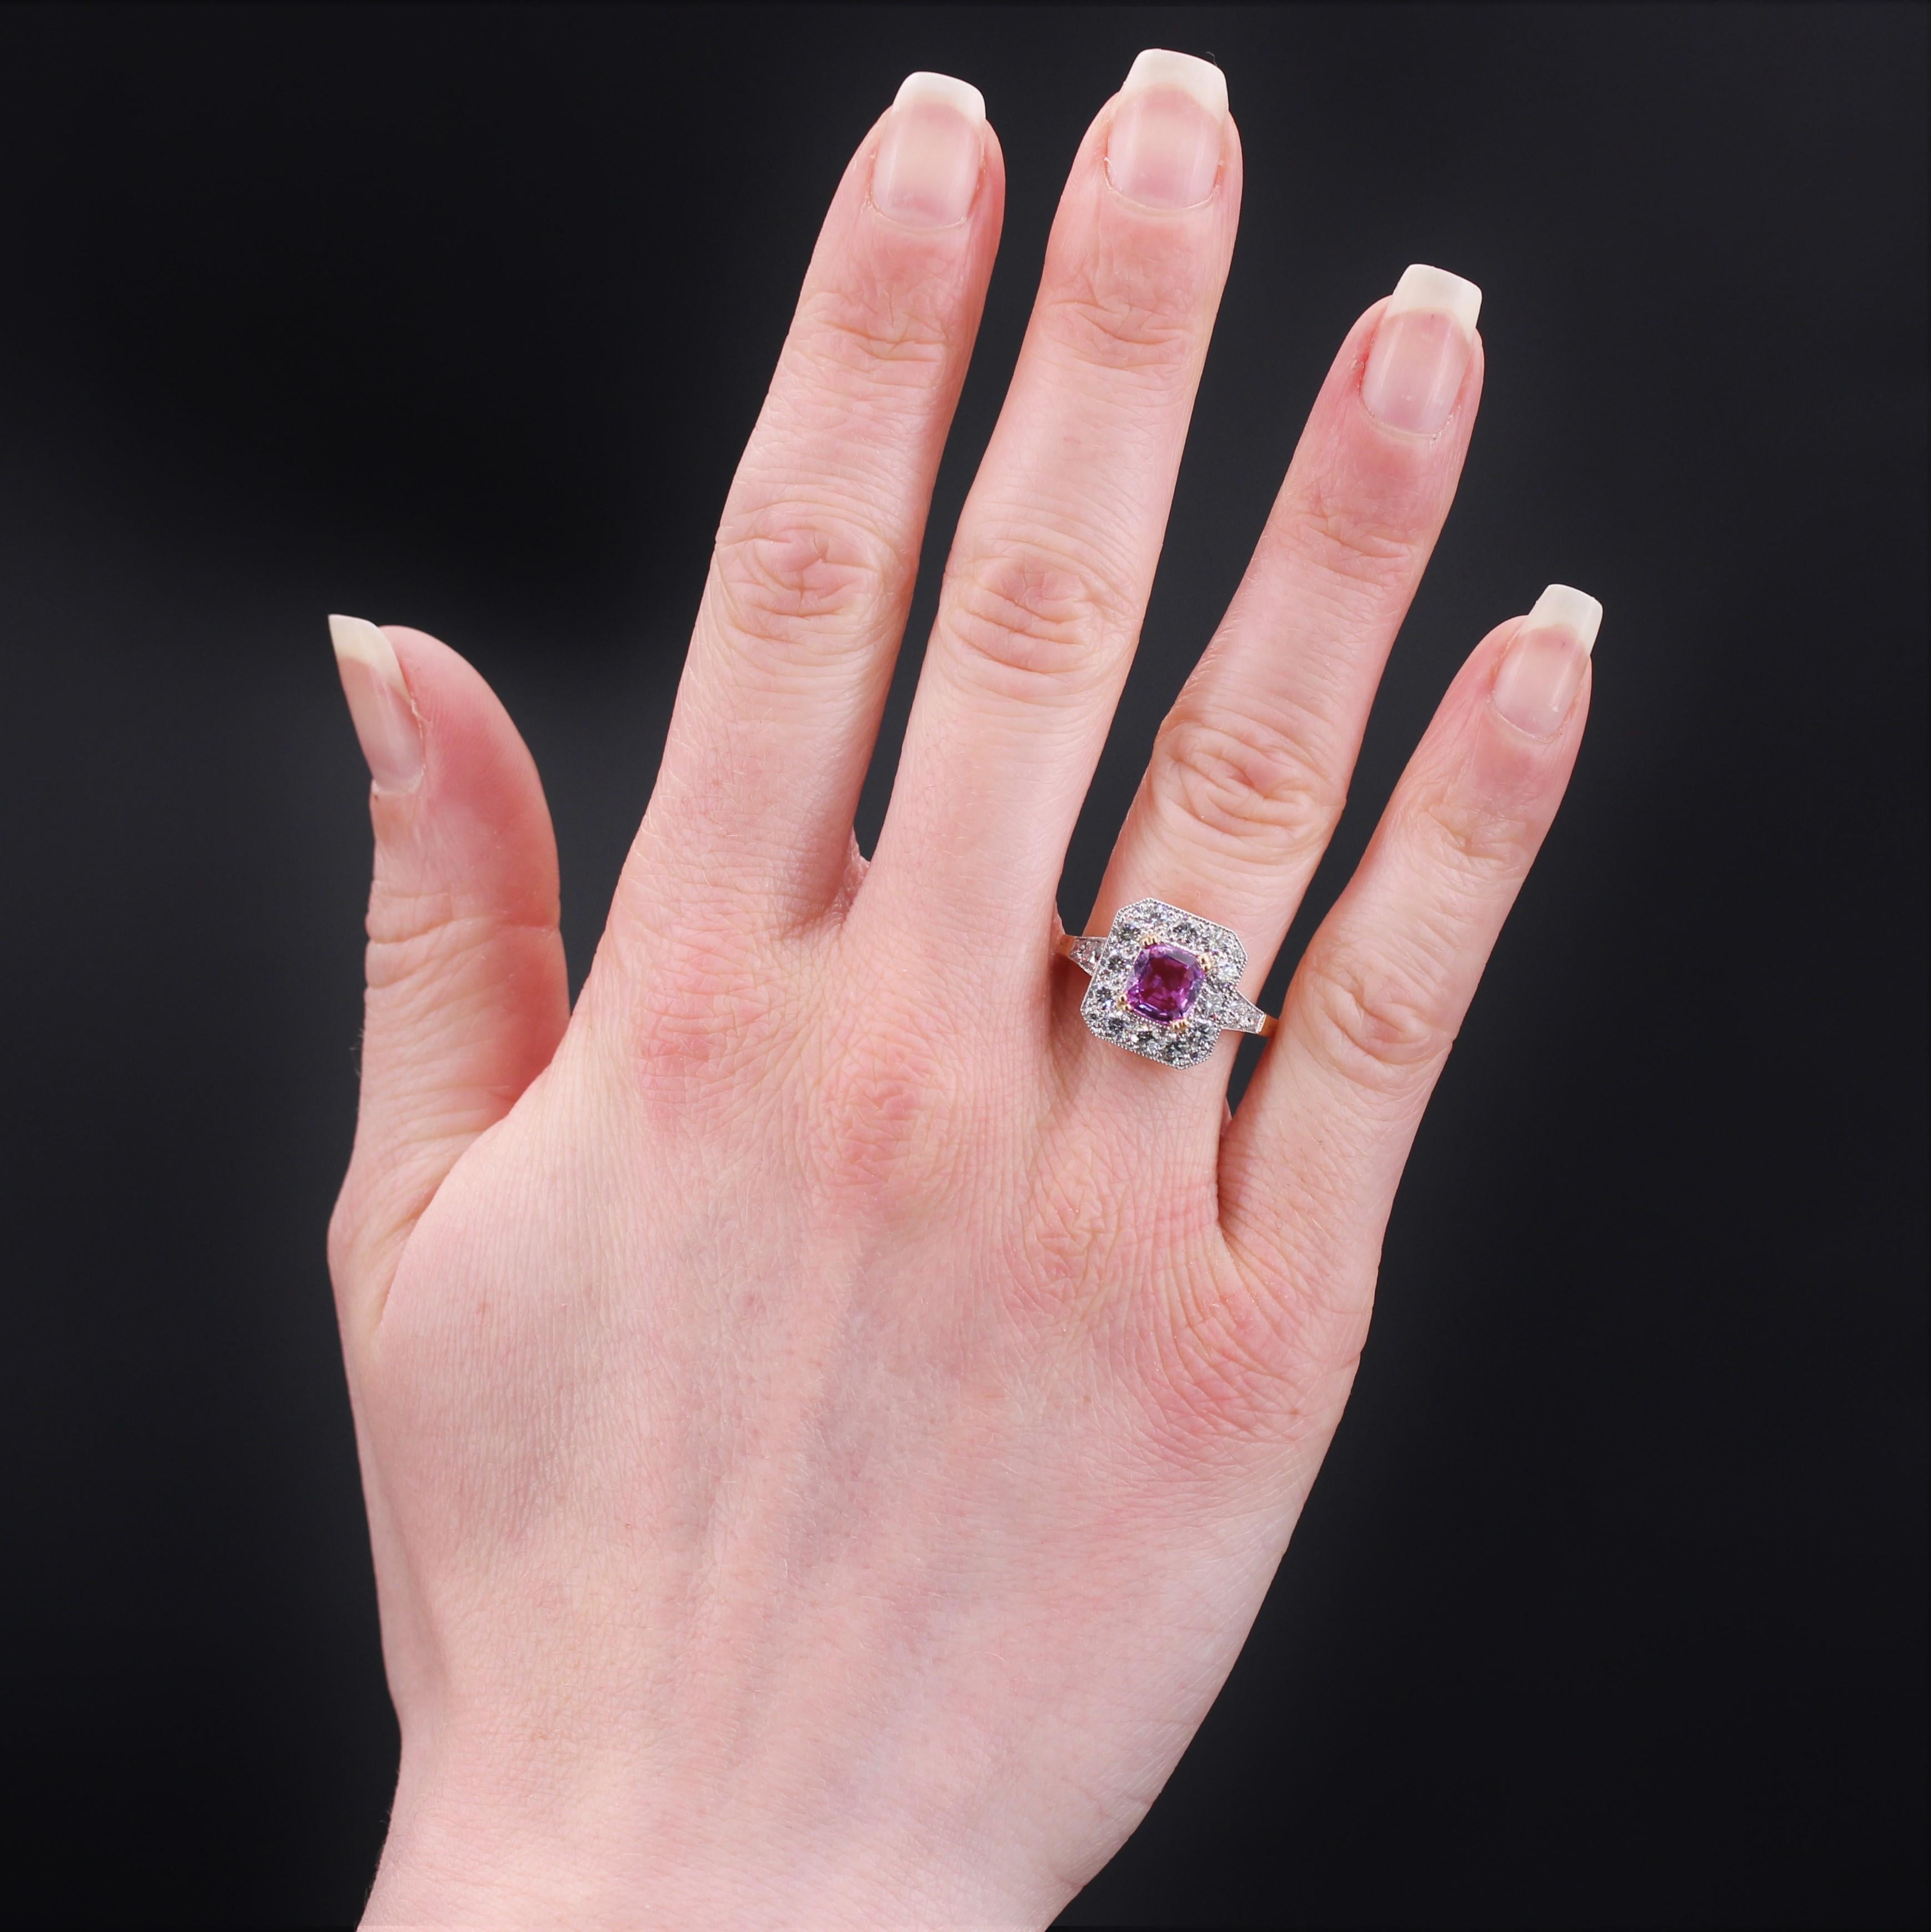 Ring aus 18 Karat Gelbgold, Adlerkopfpunze und Platin, Hundekopfpunze.
Wunderschöner neuer Ring, dessen Fassung vom Art Déco inspiriert ist. Auf der Oberseite ist er mit einem rosafarbenen Saphir im Kissenschliff verziert, der von 2x4 Krallen